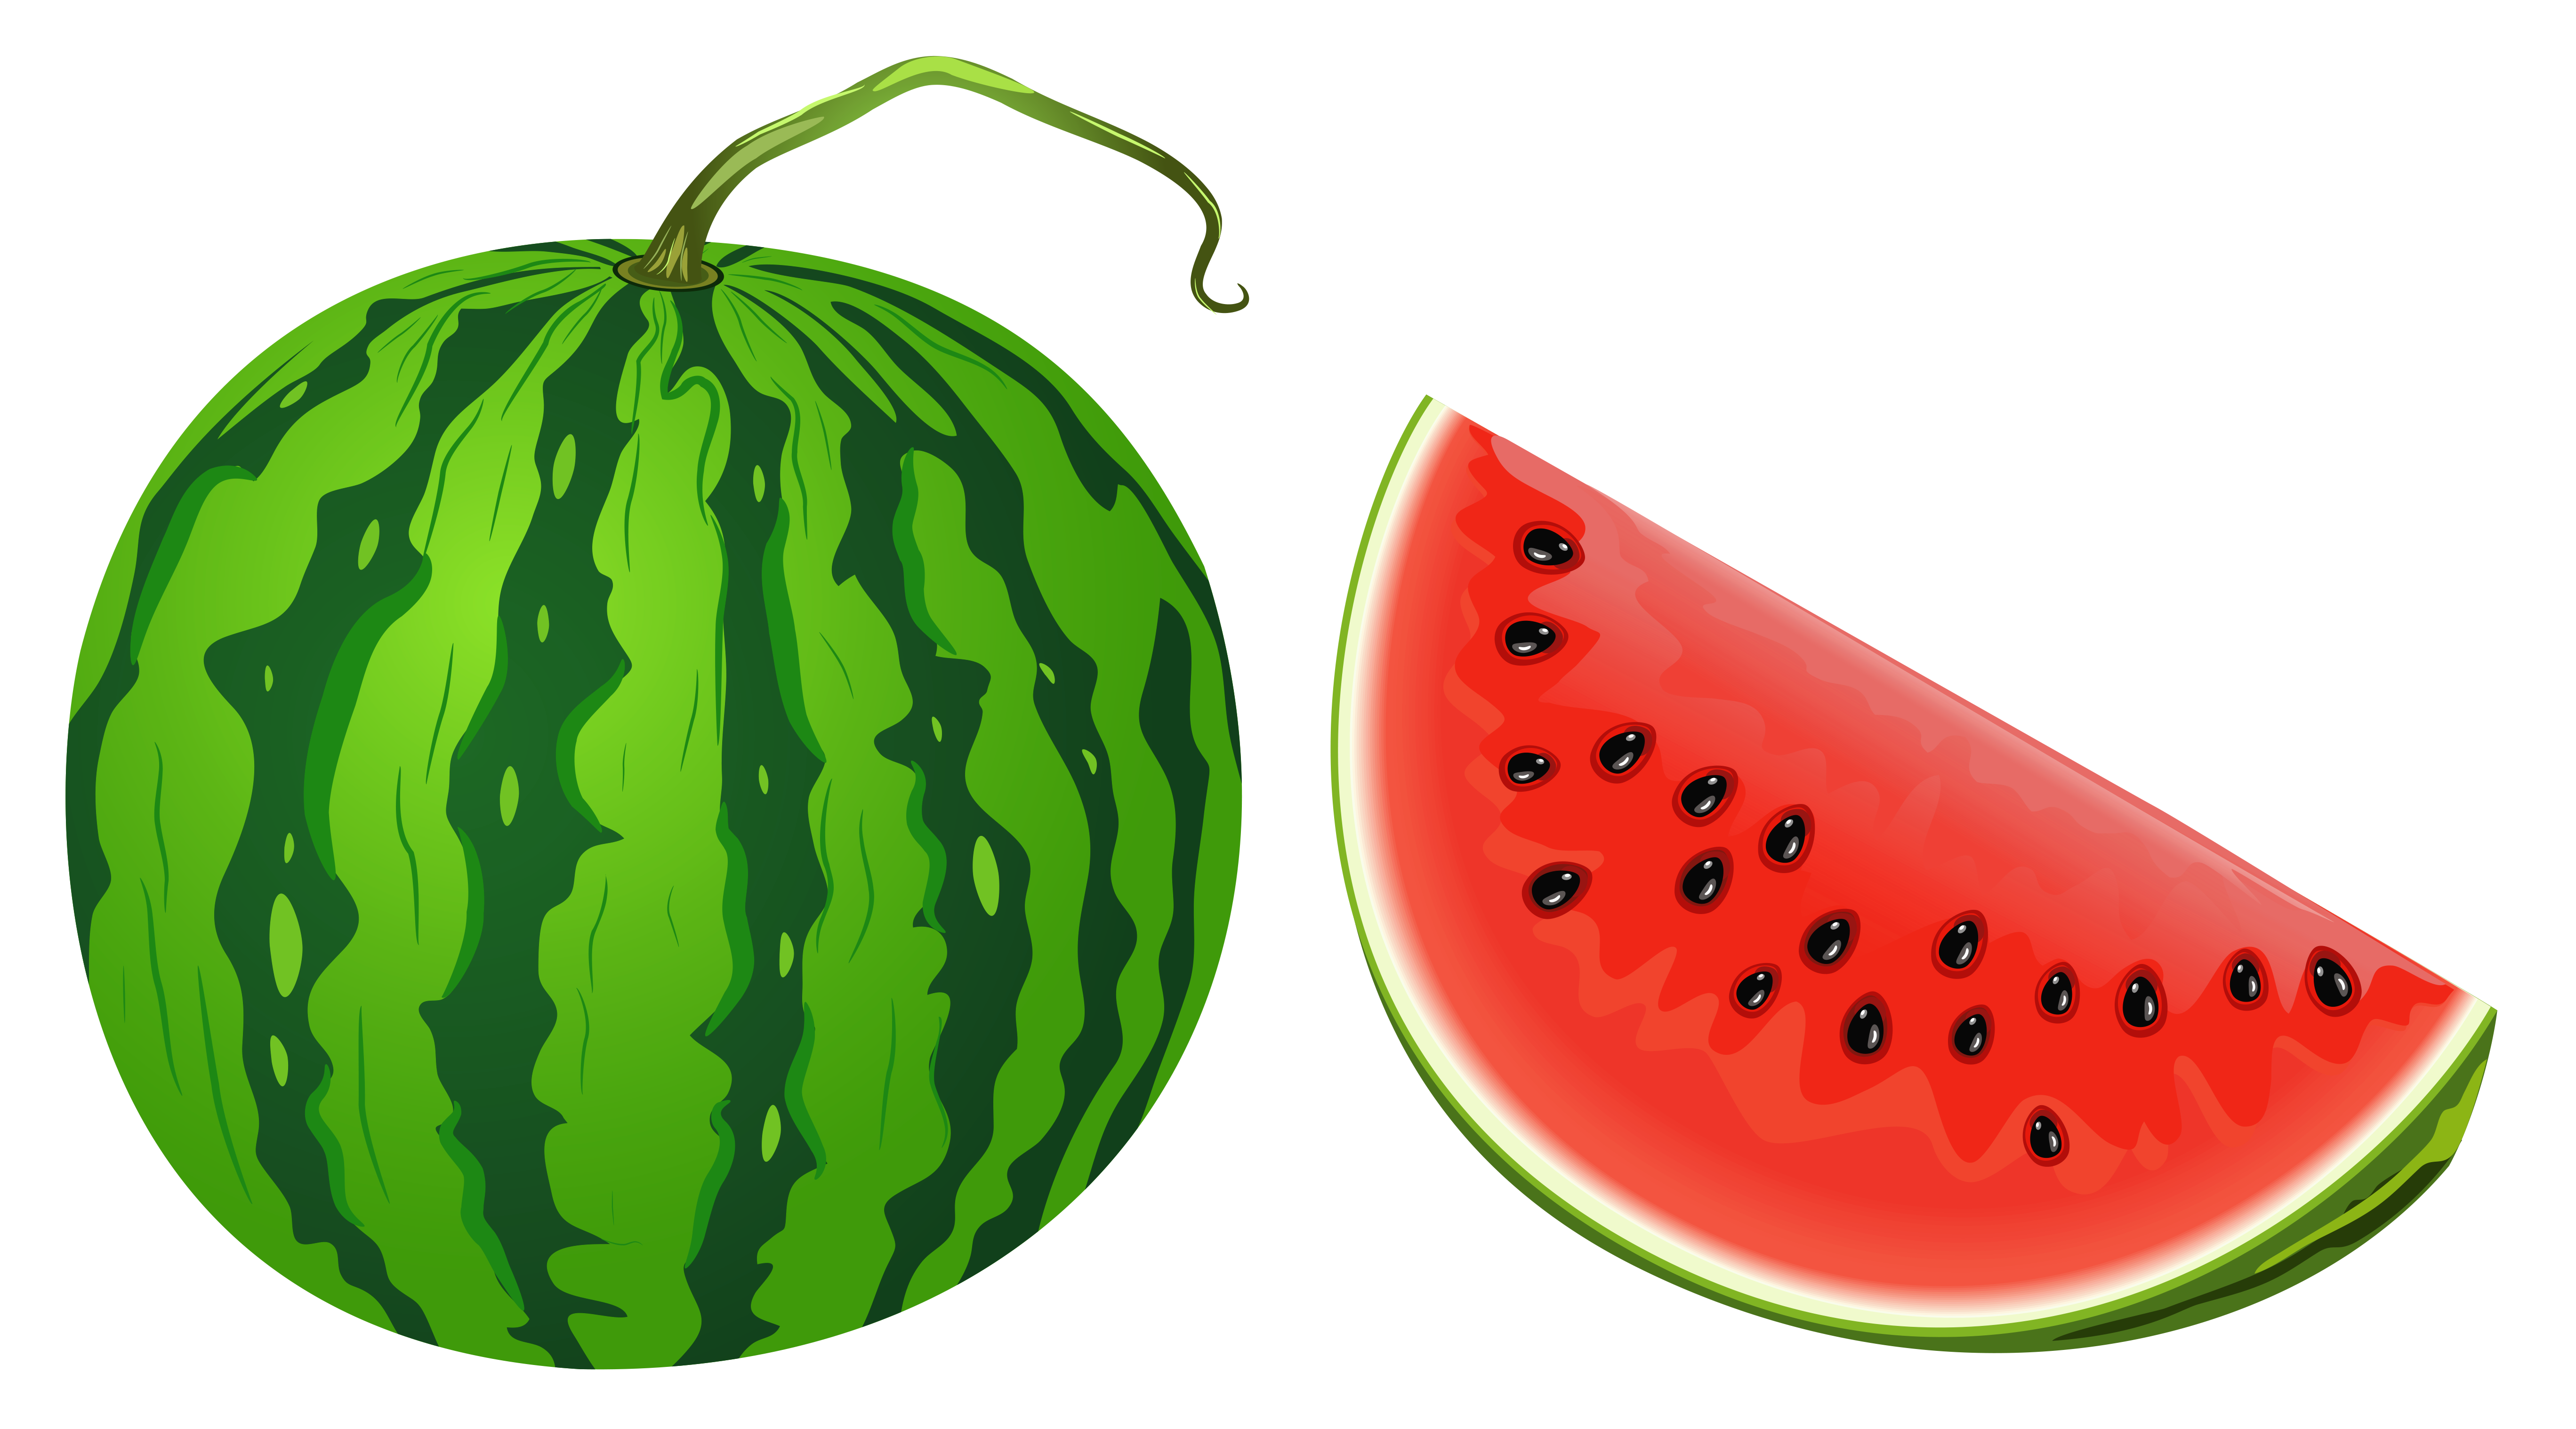 whole watermelon fruit